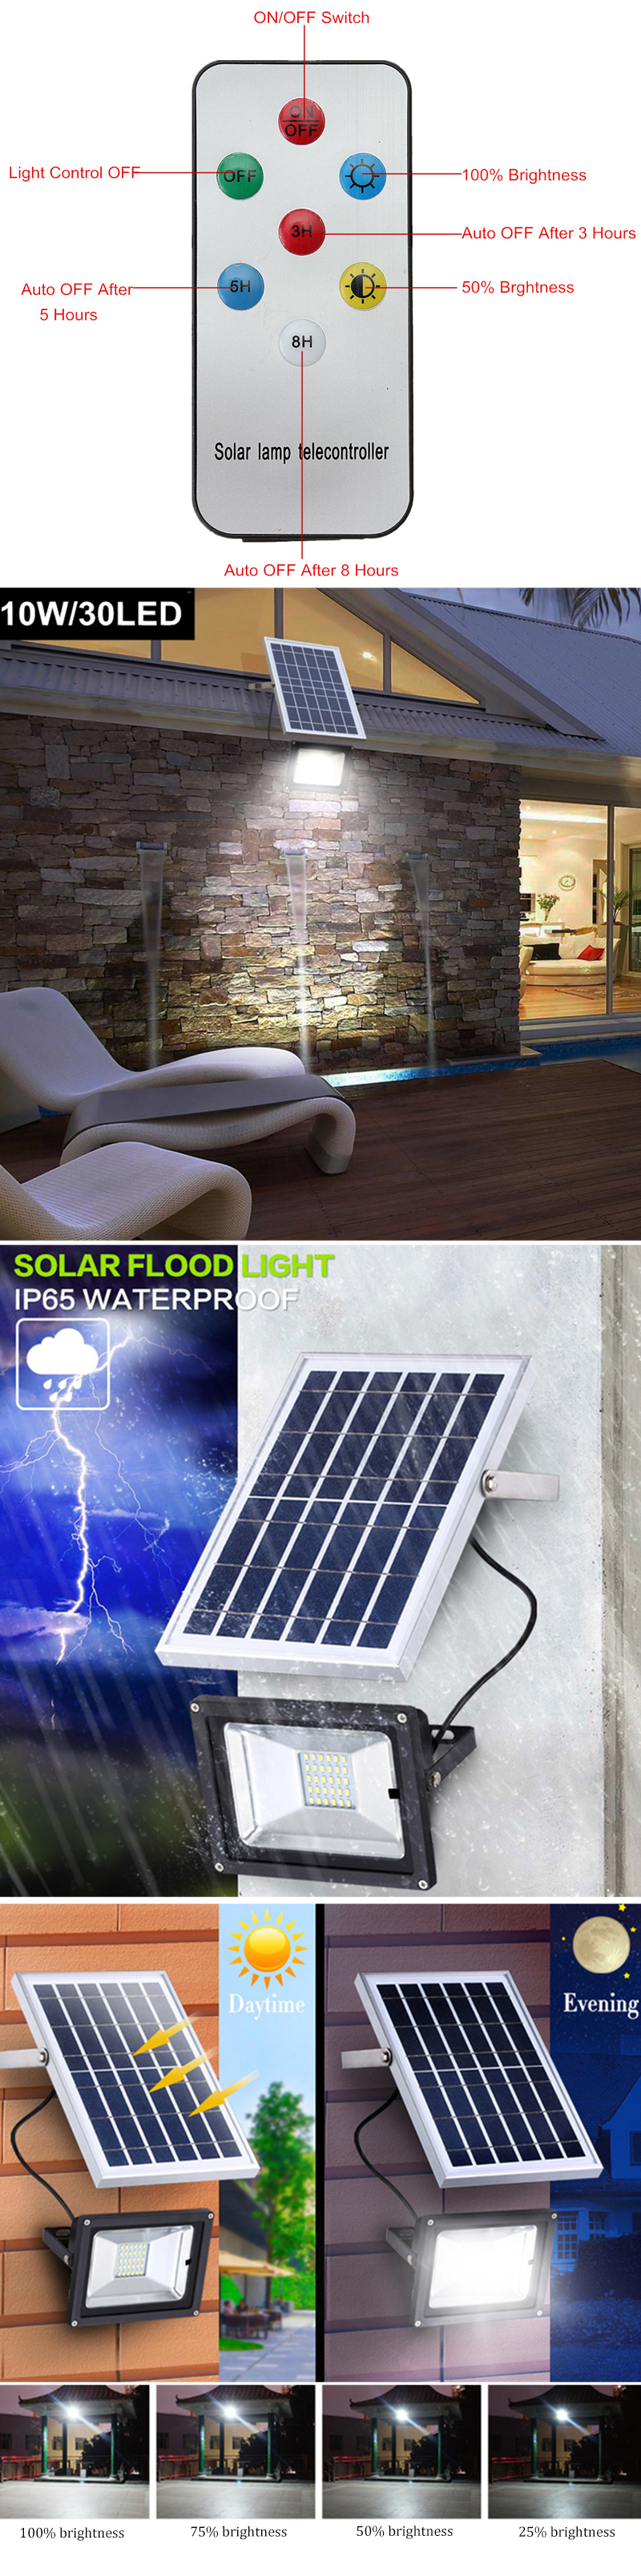 10W-Solar-Power-Light-Ourdoor-Camping-Light-Waterproof-Garden-Lawn-Lamp-30-LED-Lantern-1357382